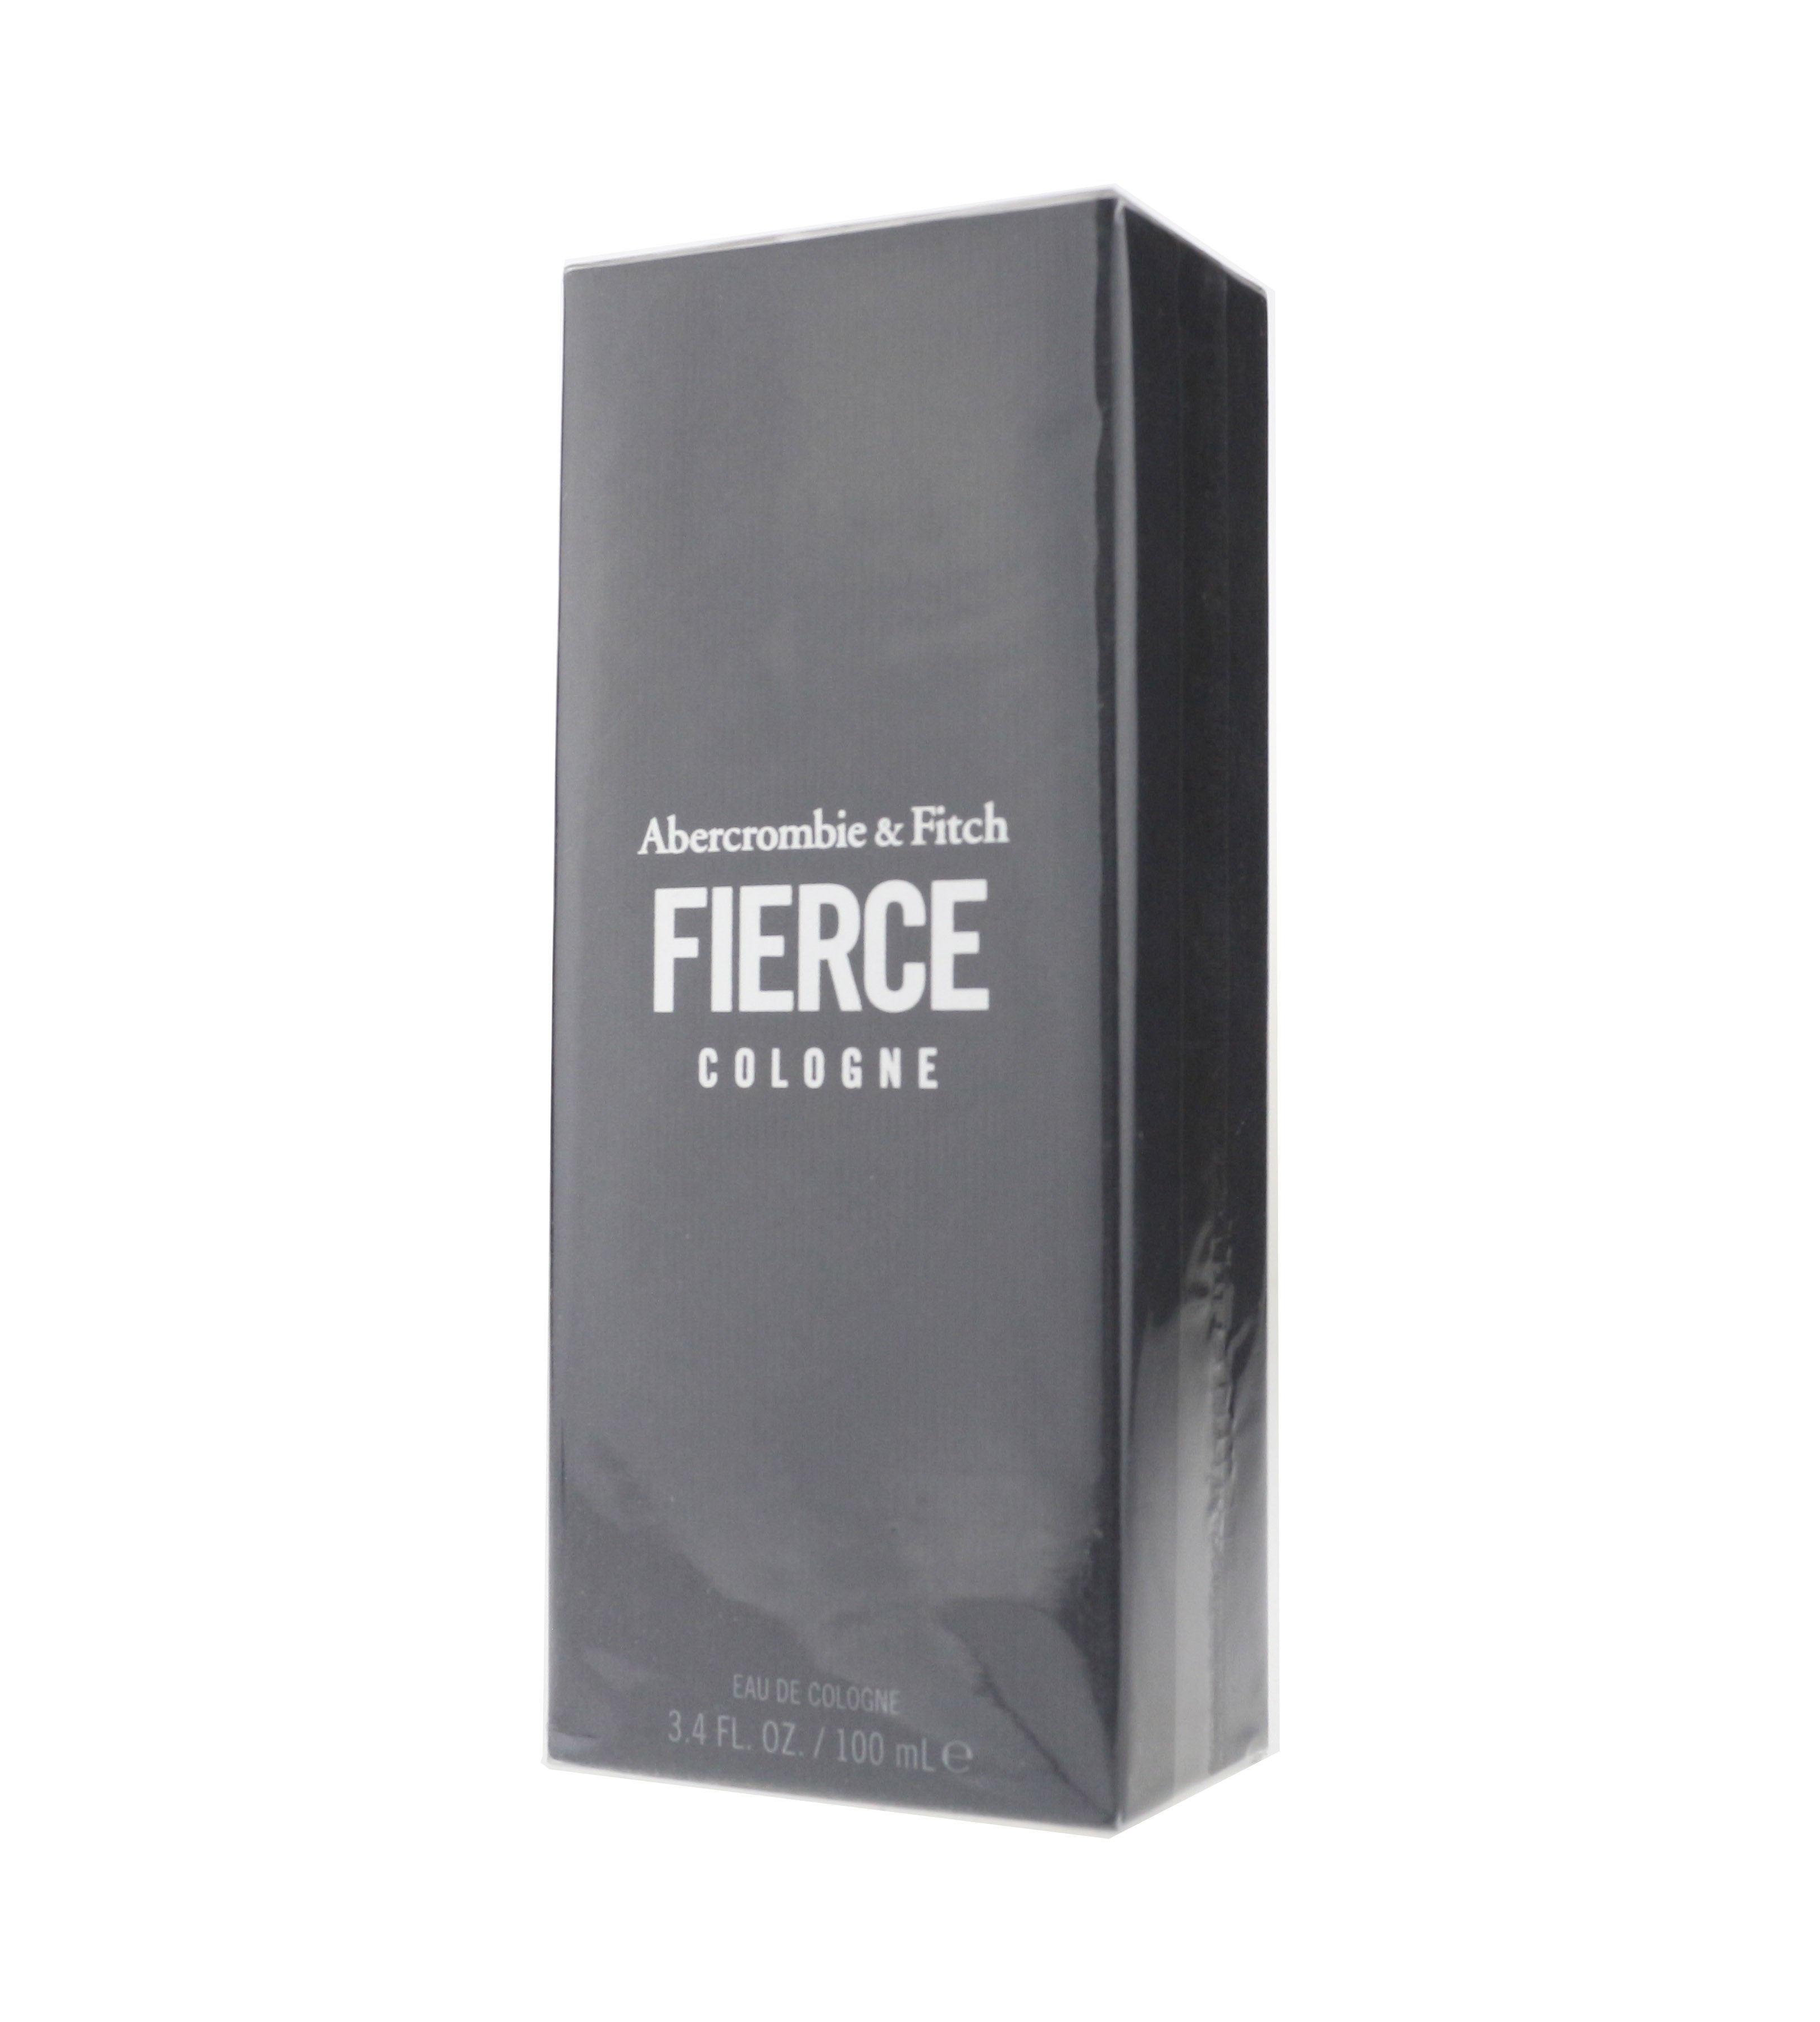 Abercrombie & Fitch Fierce Cologne Eau De Cologne 100 ml – Eaudeluxe